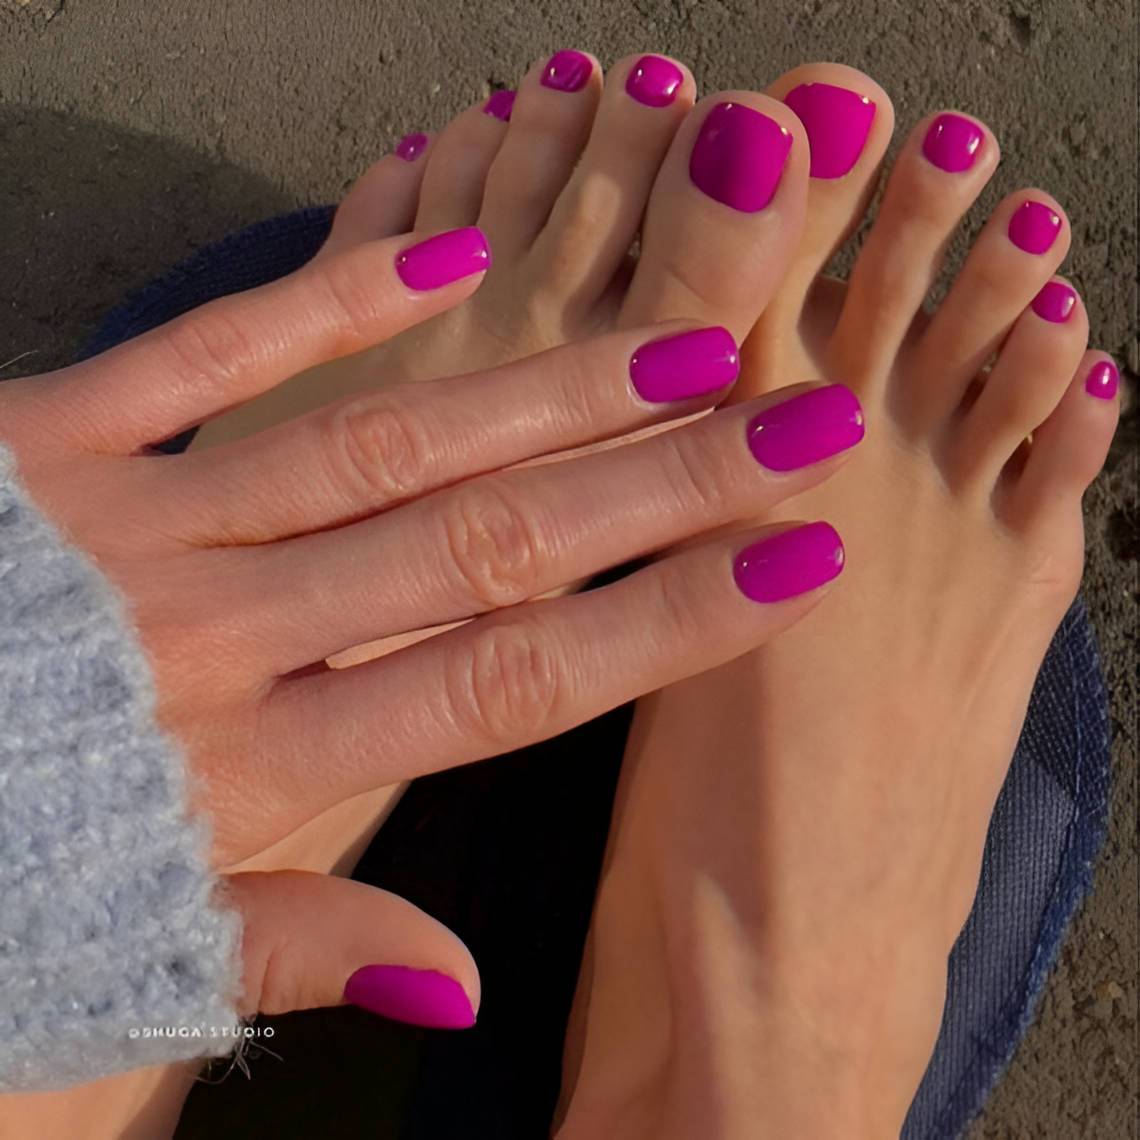 20 Matching Nail and Toe Nail Designs To Copy This Summer - 155